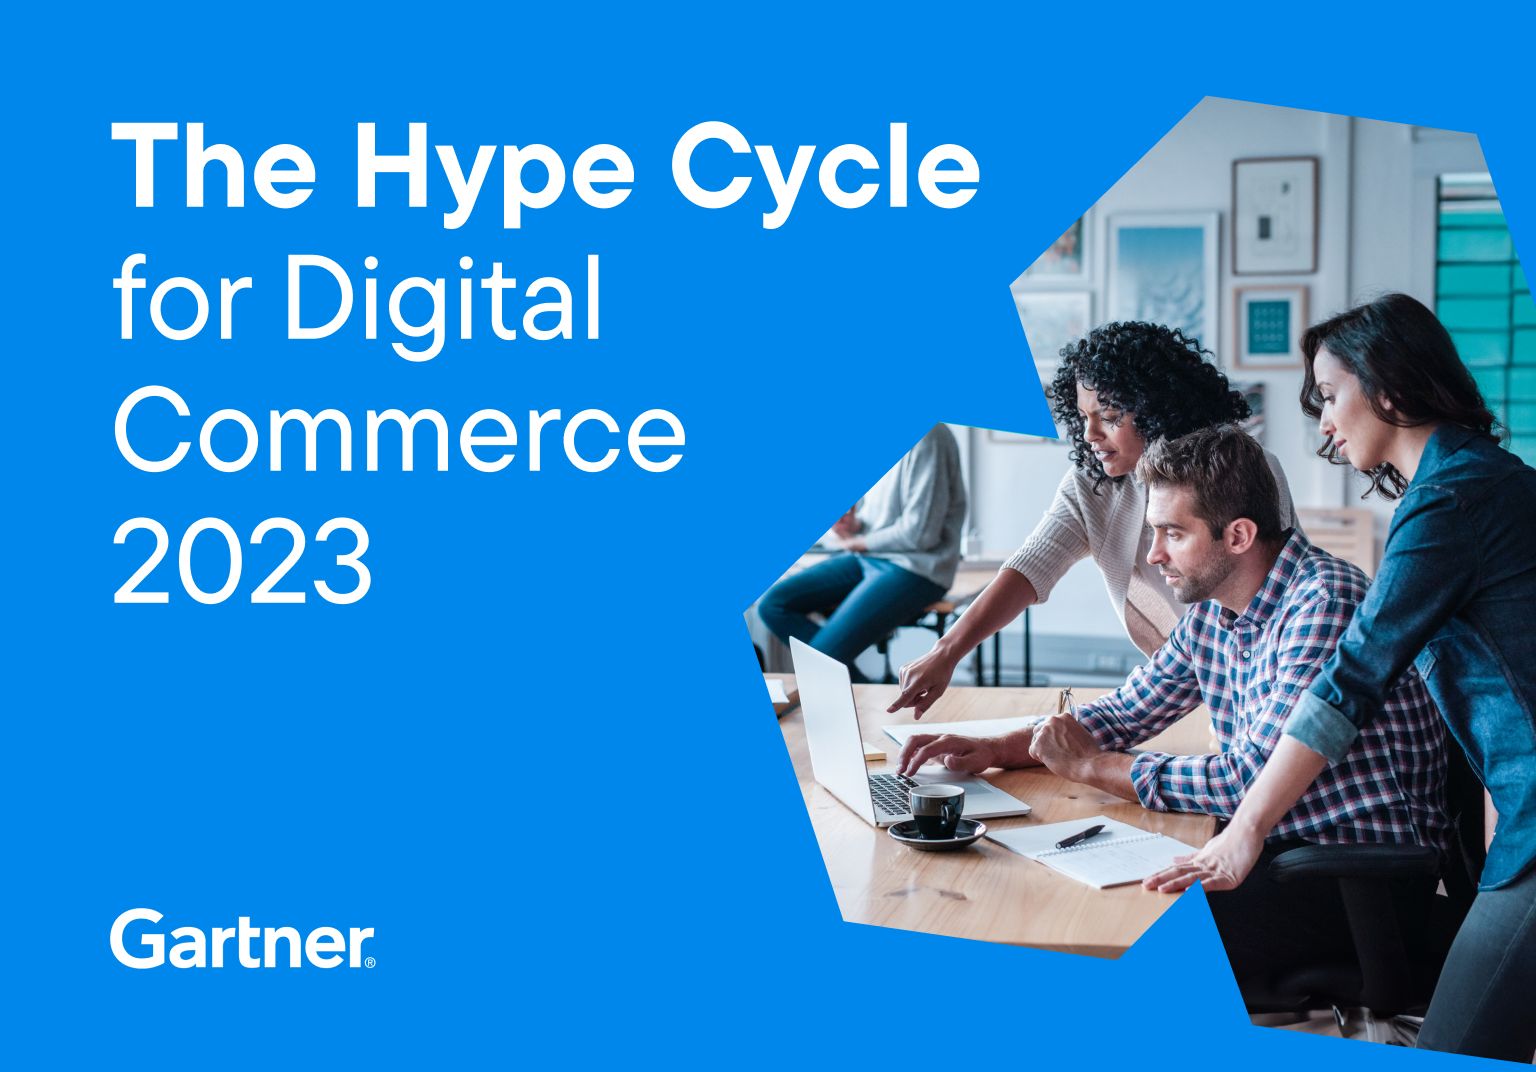 Gartner Hype Cycle for Digital Commerce 2023